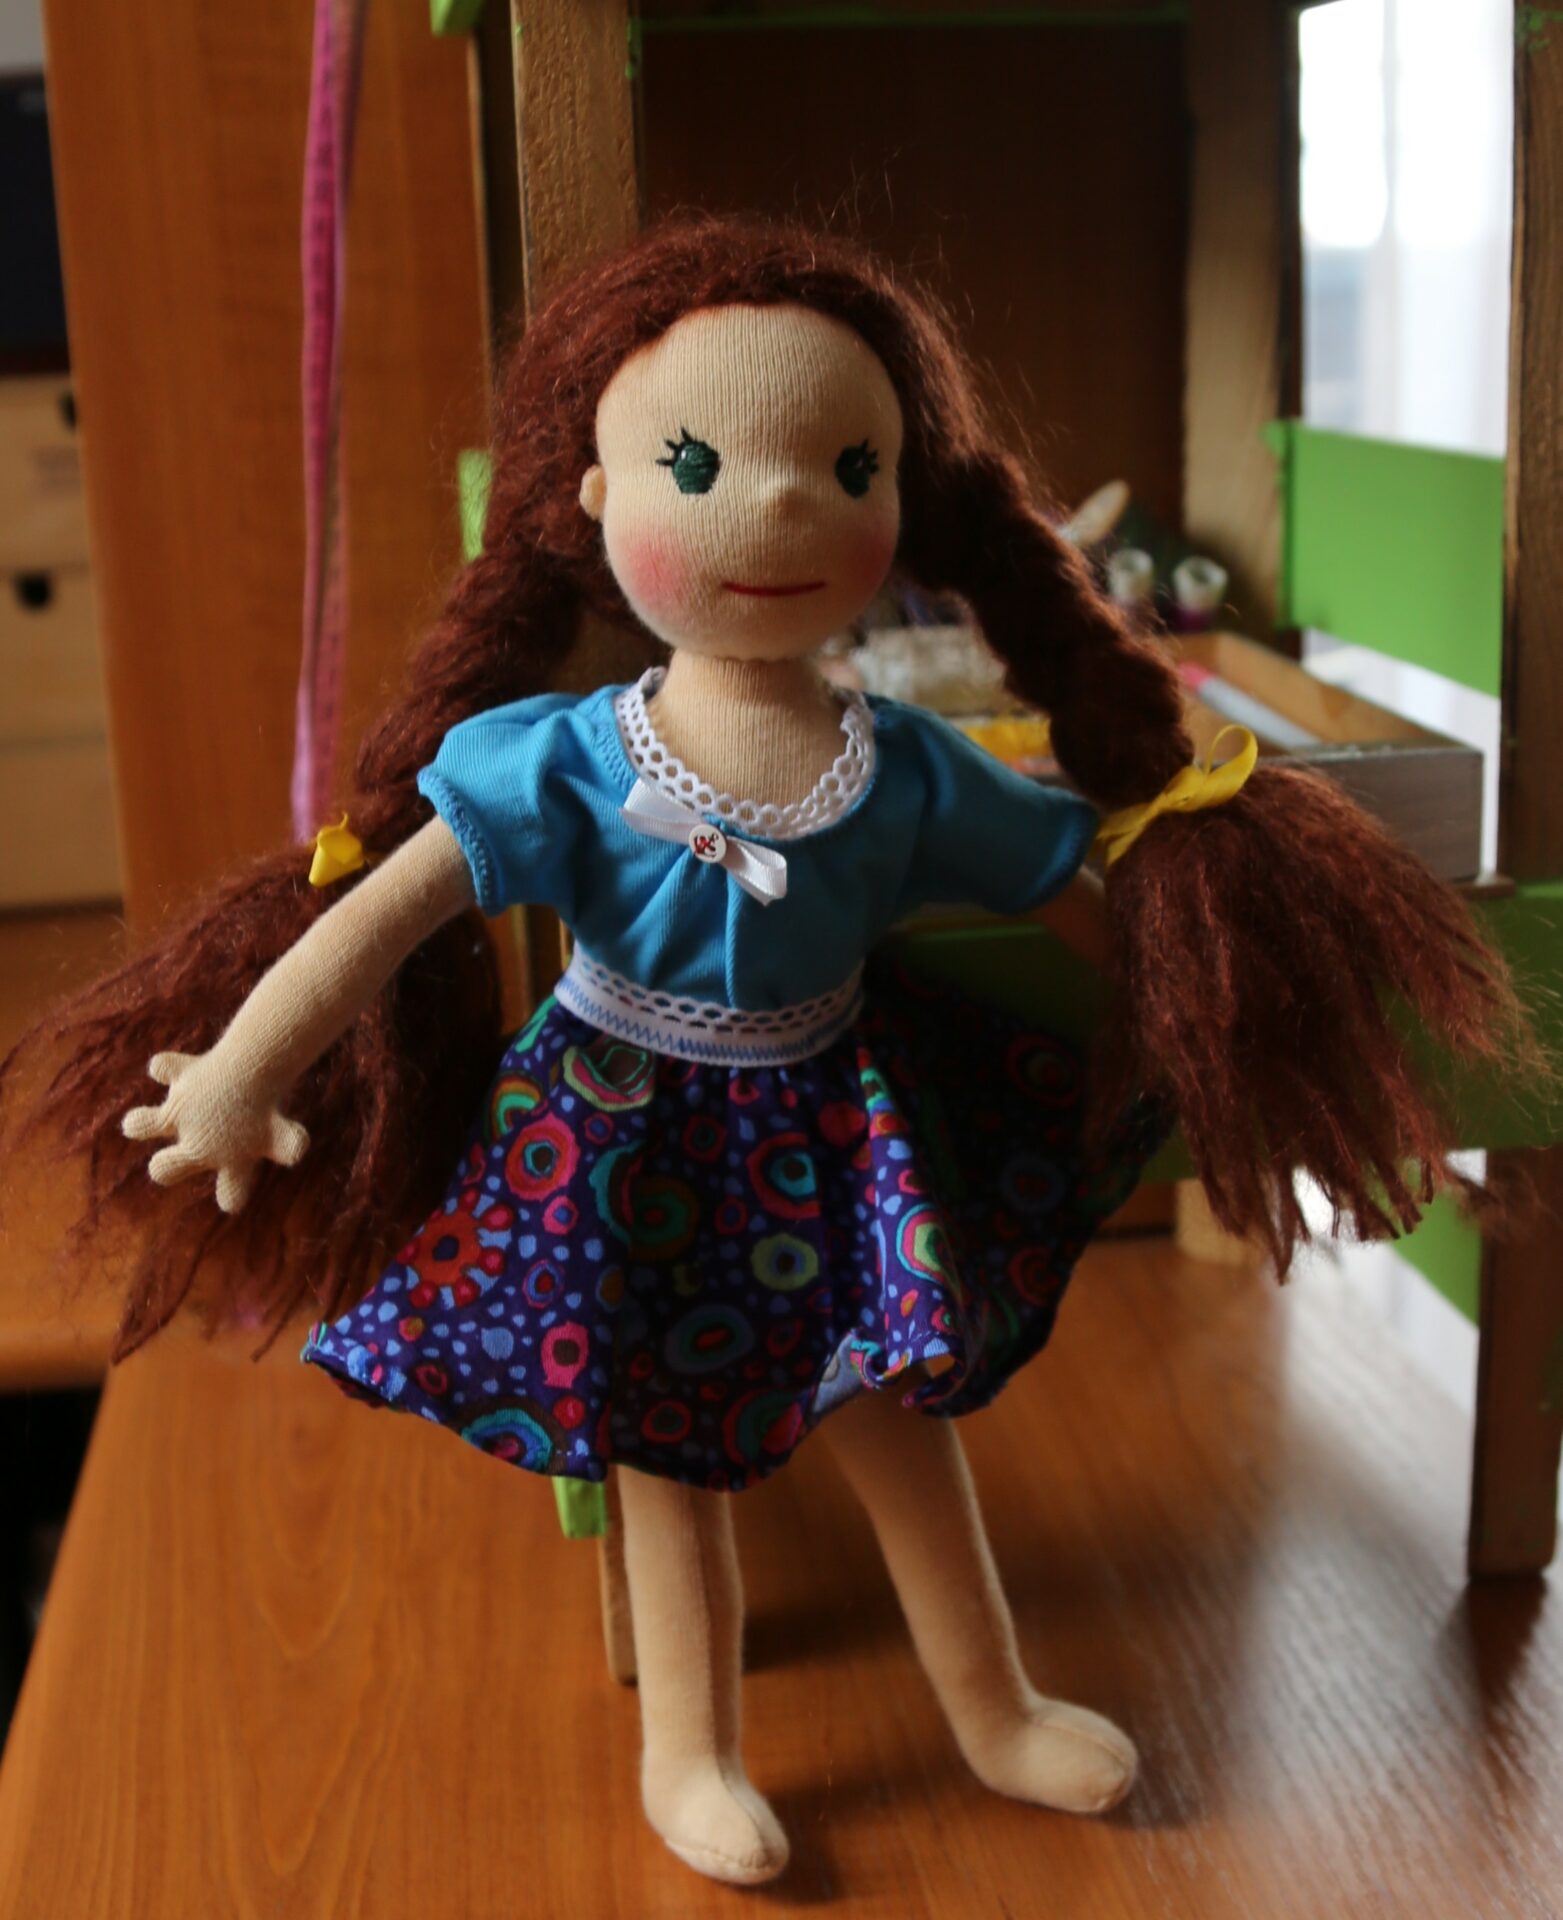 Štíhlá panenka s mohérovými vlásky plněná ovčí vlnou v modrých šatech a sukni. Ekopanenky